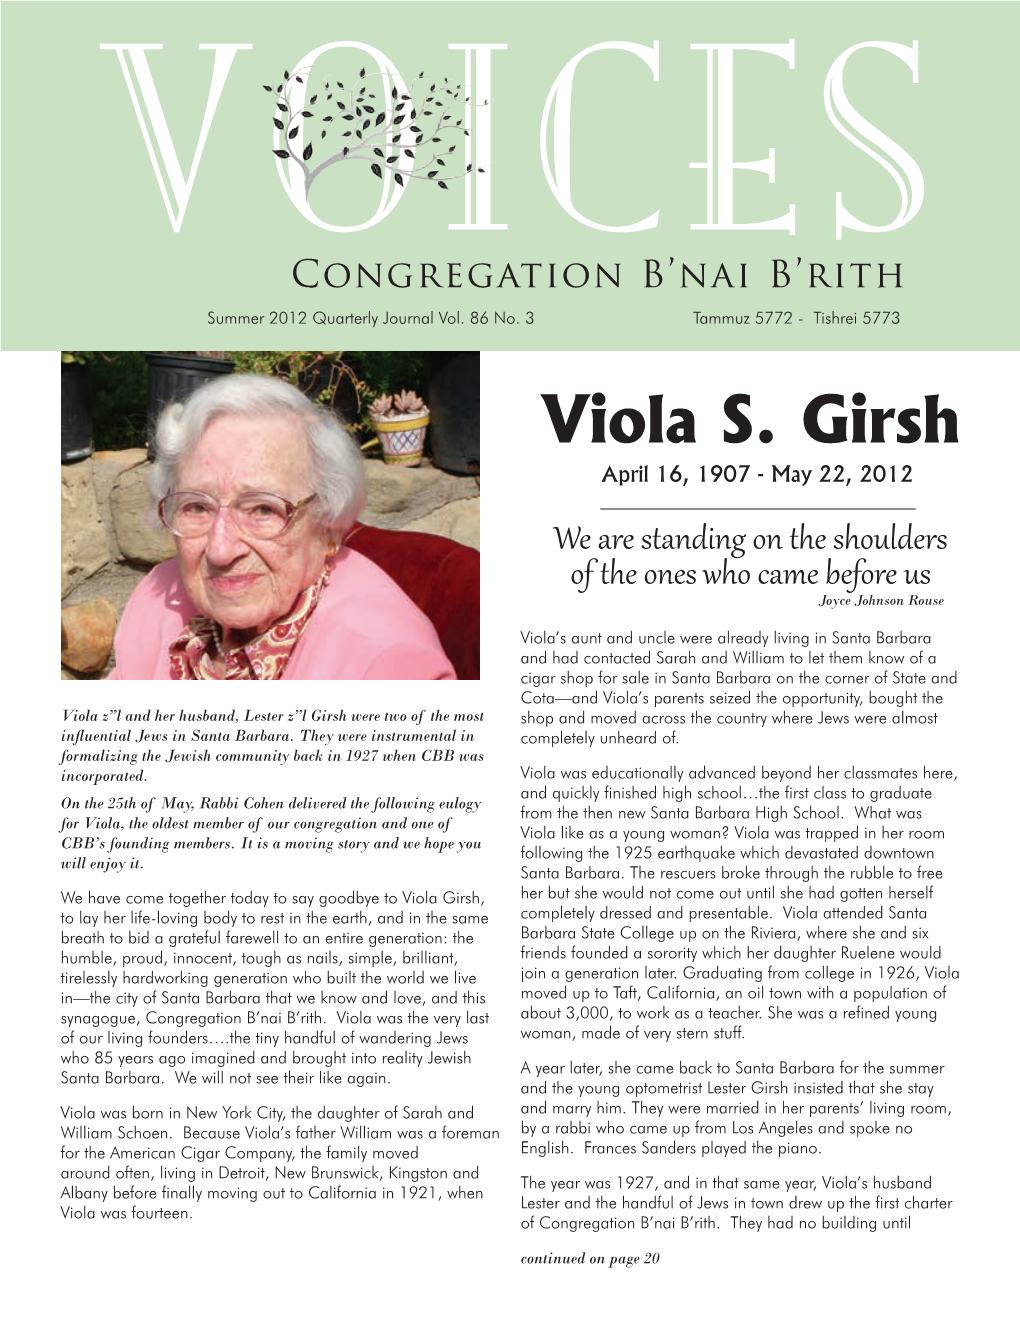 Viola S. Girsh April 16, 1907 - May 22, 2012